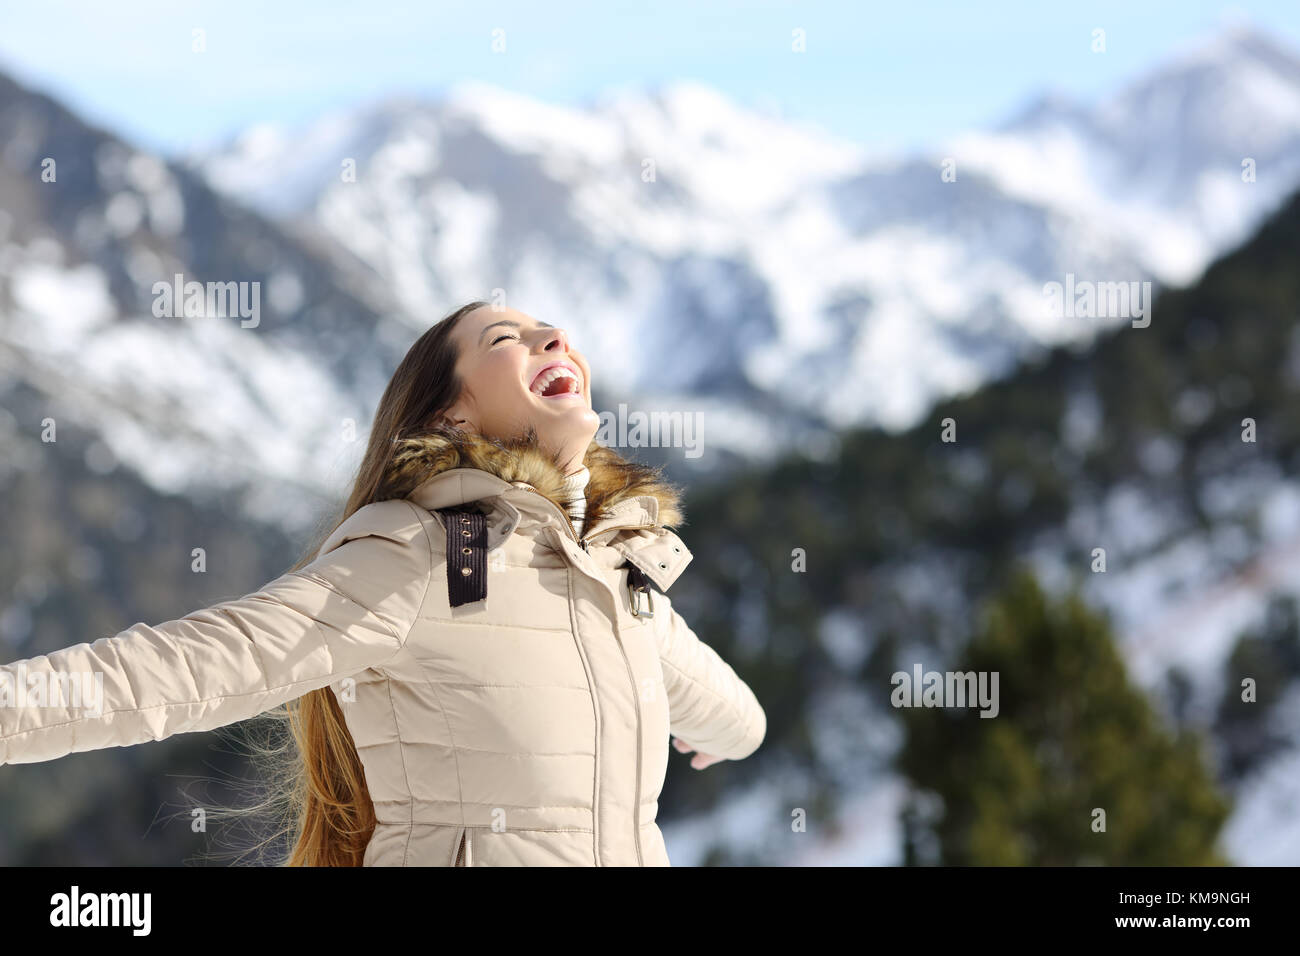 Ritratto di una donna entusiasta di ridere in inverno con una montagna innevata in background Foto Stock